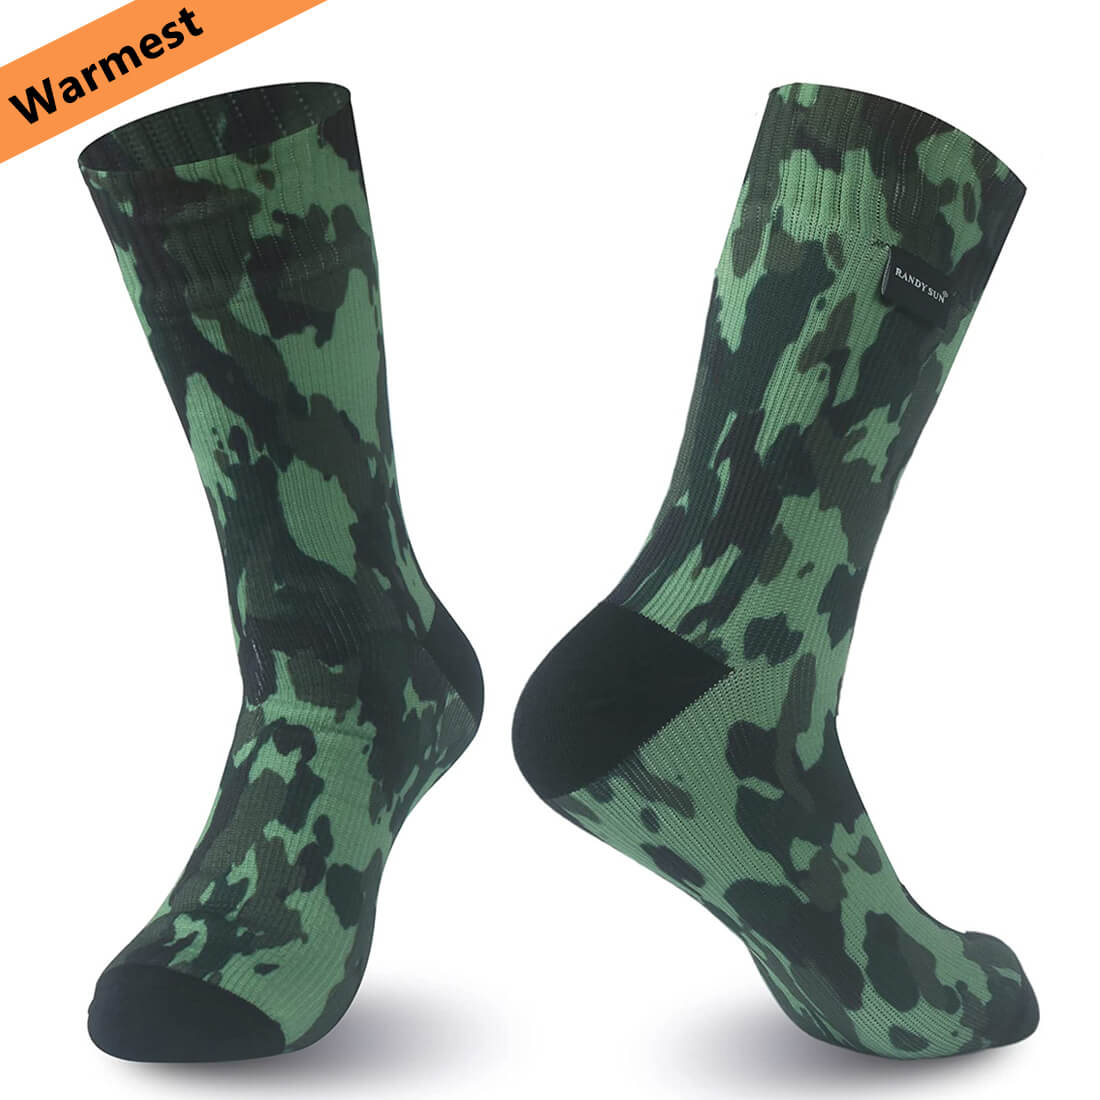 warmest waterproof socks